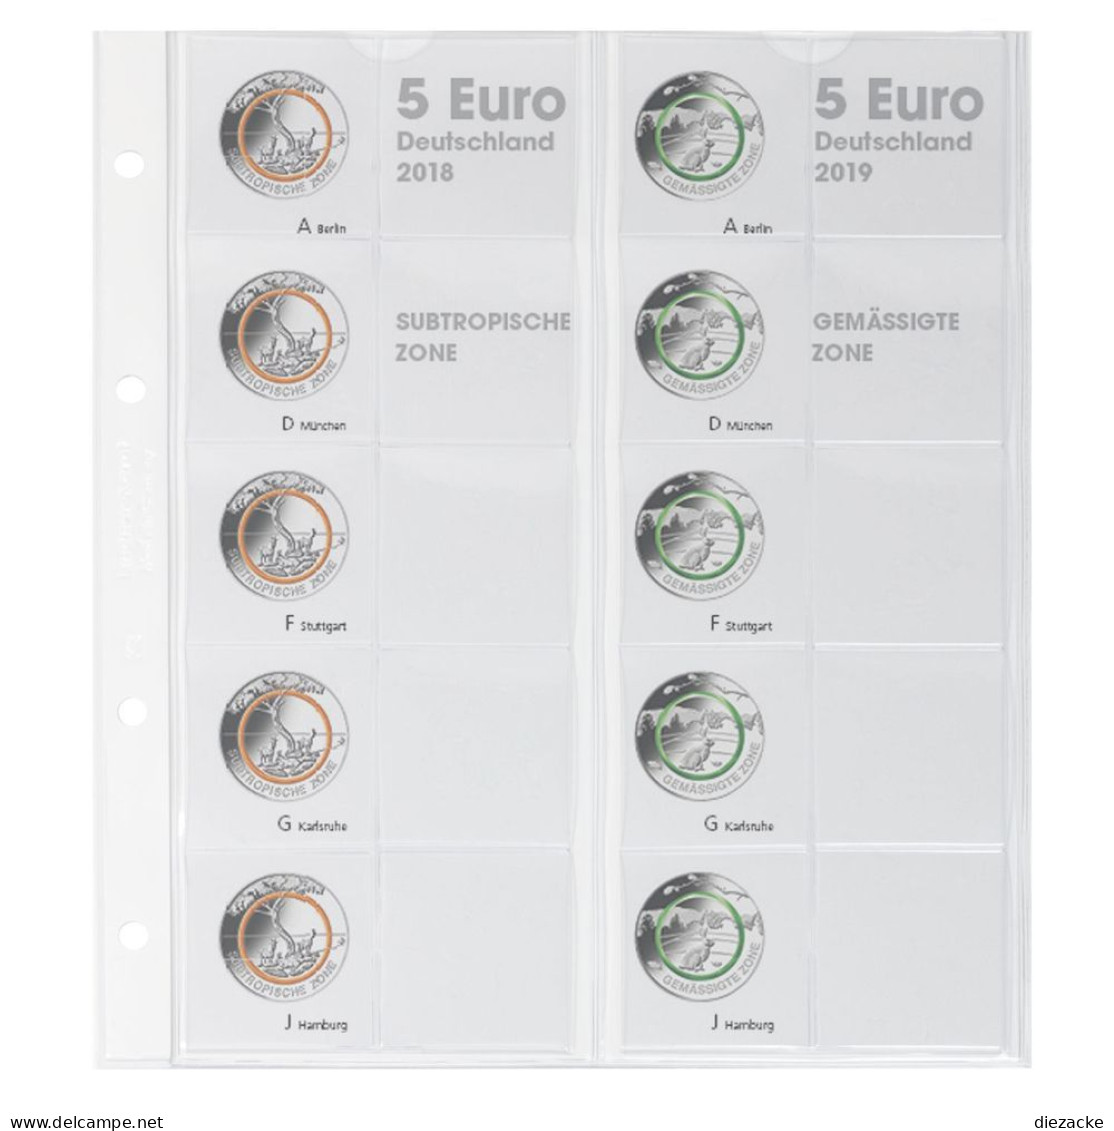 Lindner Vordruckblatt Karat Für 5 Euro-Münzen Polymerring 1119-2 Neu - Matériel